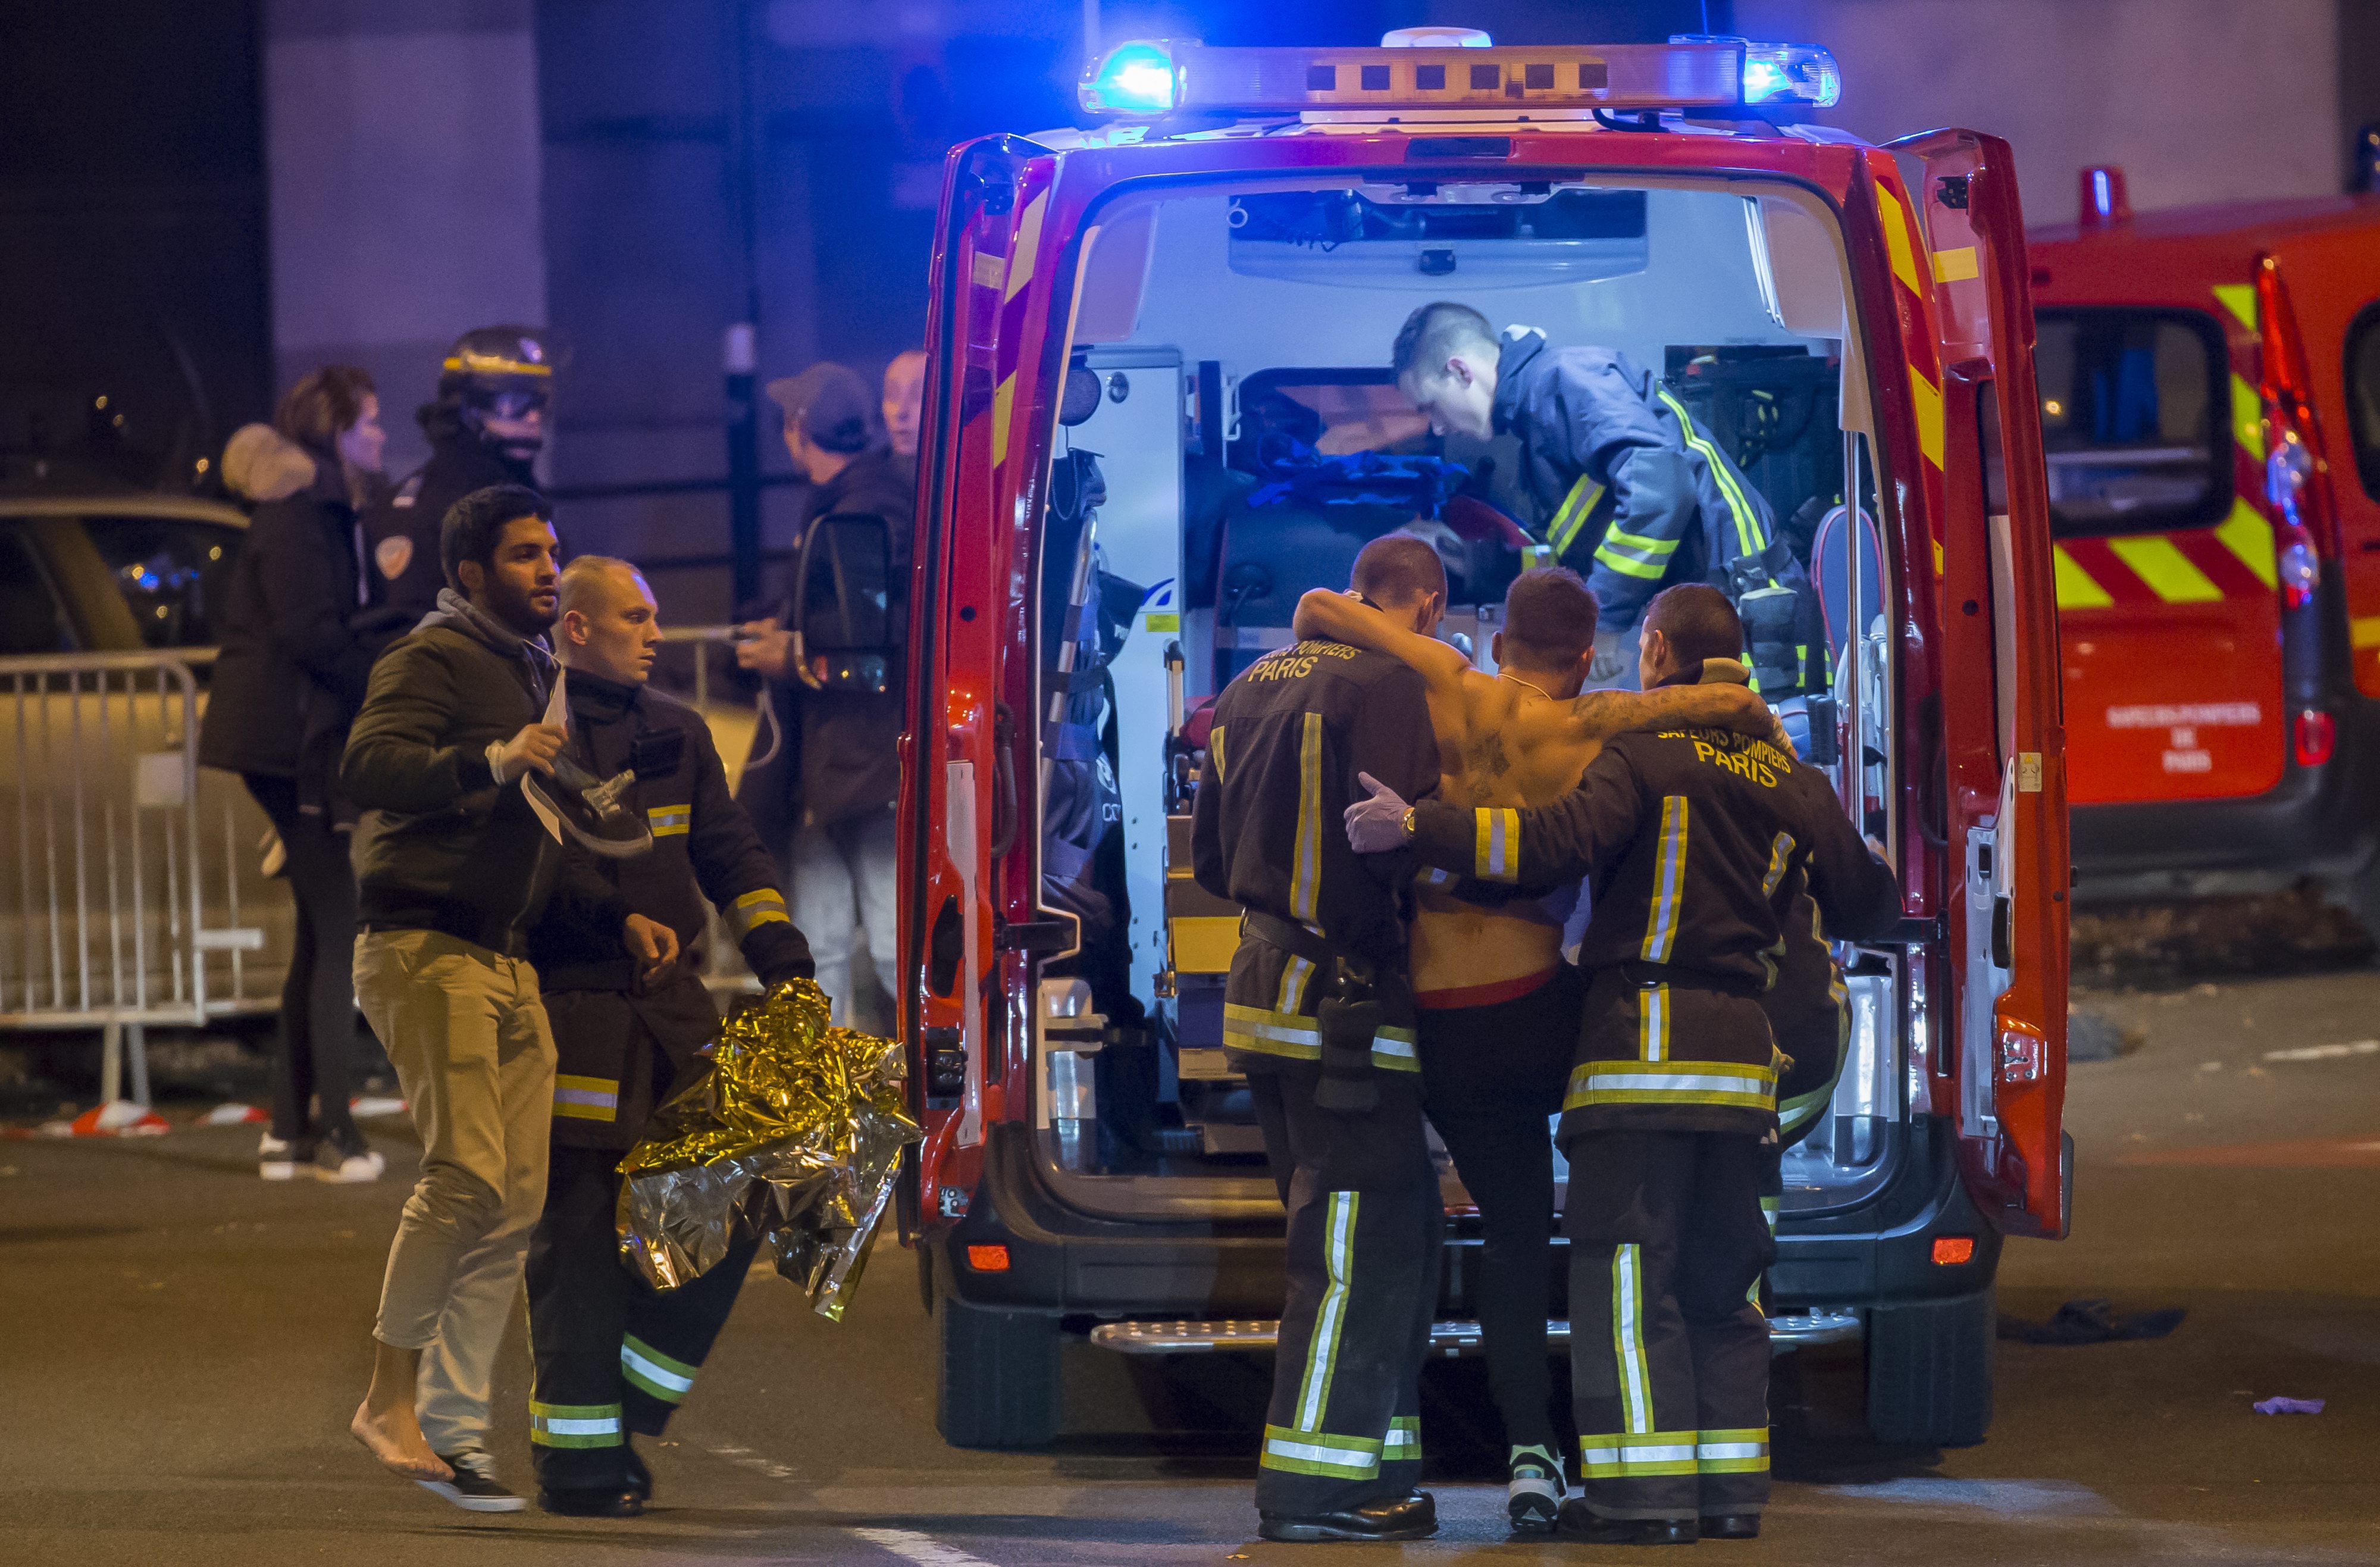 Най-малко 128 са жертвите на атаките във френската столица. Ранени са още 180 души, 99 от които са в тежко състояние